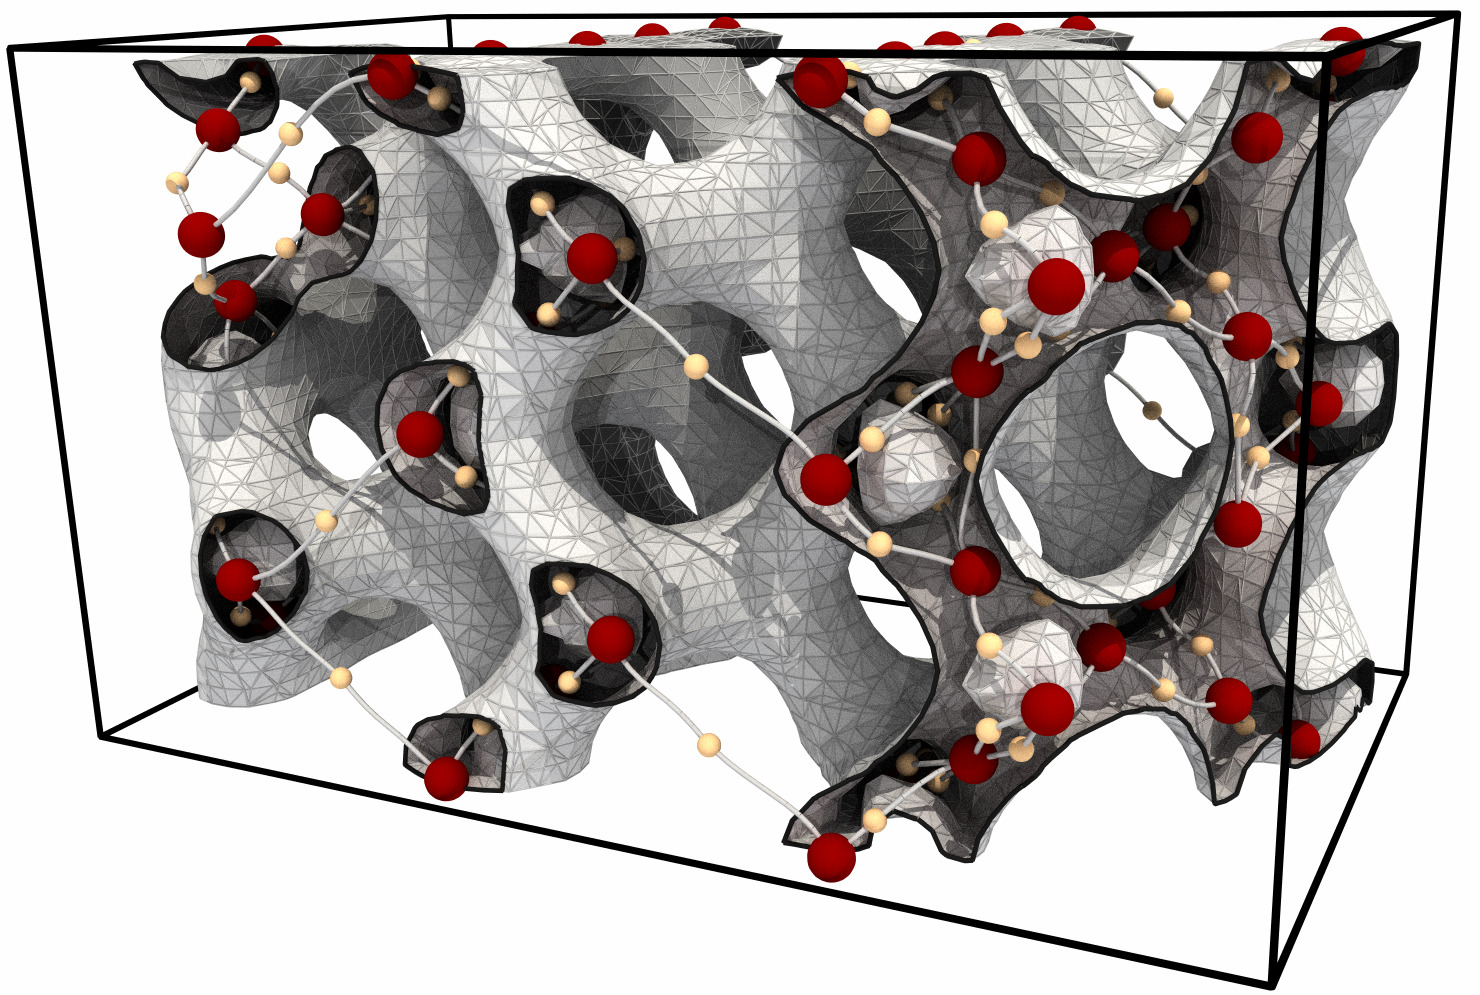 Morse-Smale Complex of a Silicium Grid